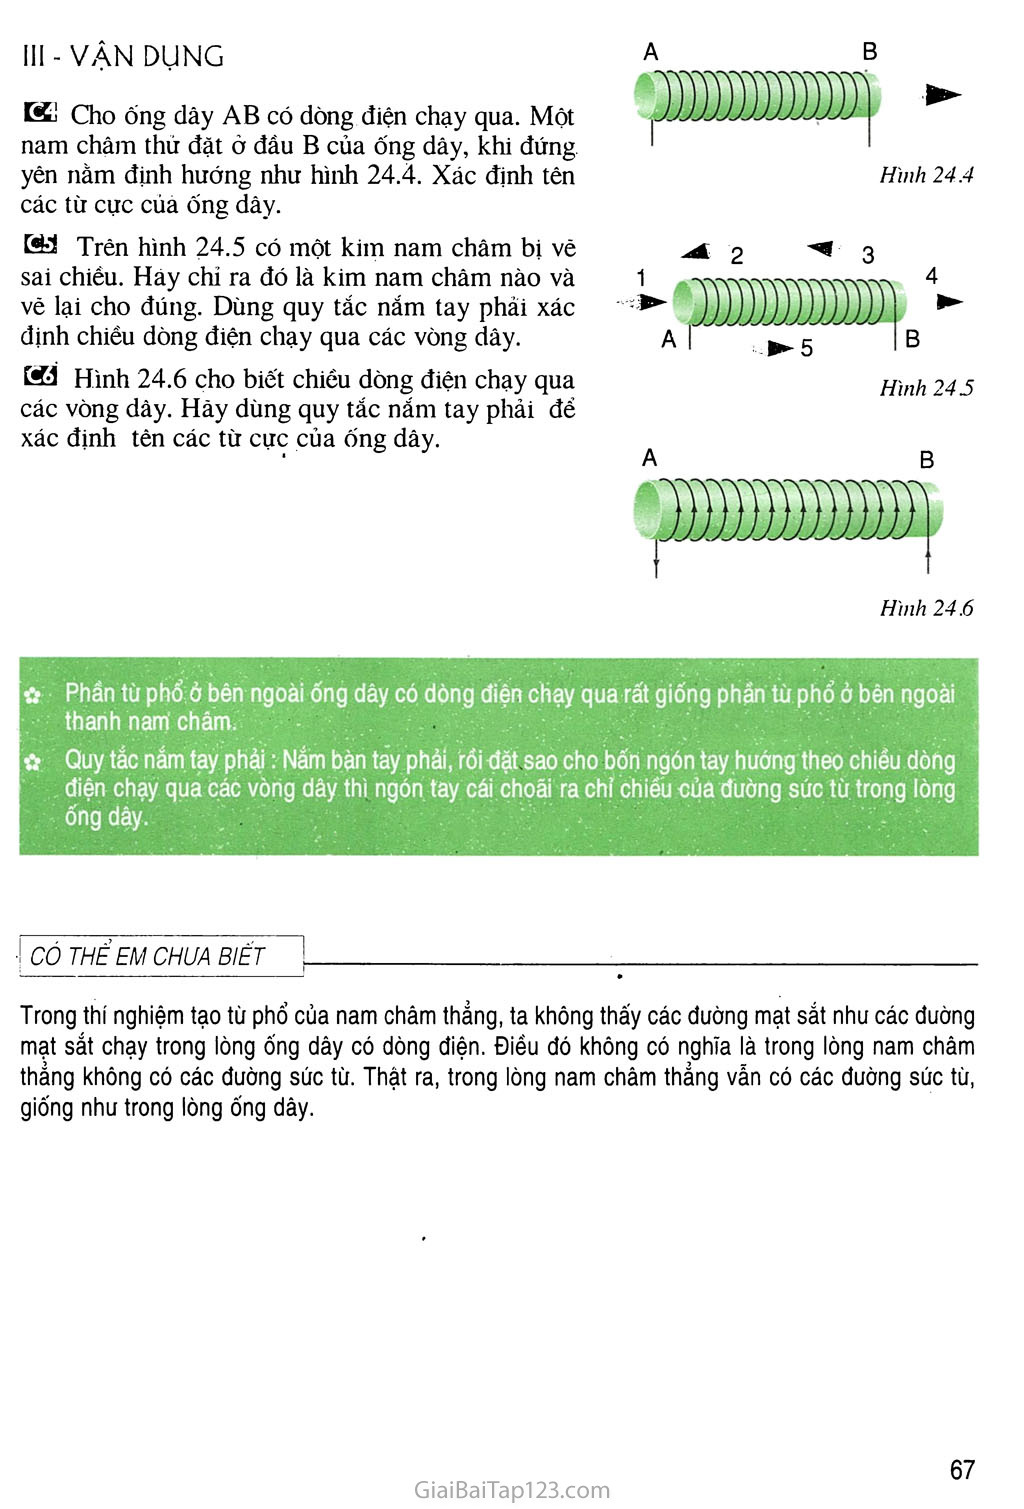 Bàl 24 Từ trường của ống dây có dòng điện chạy qua trang 3